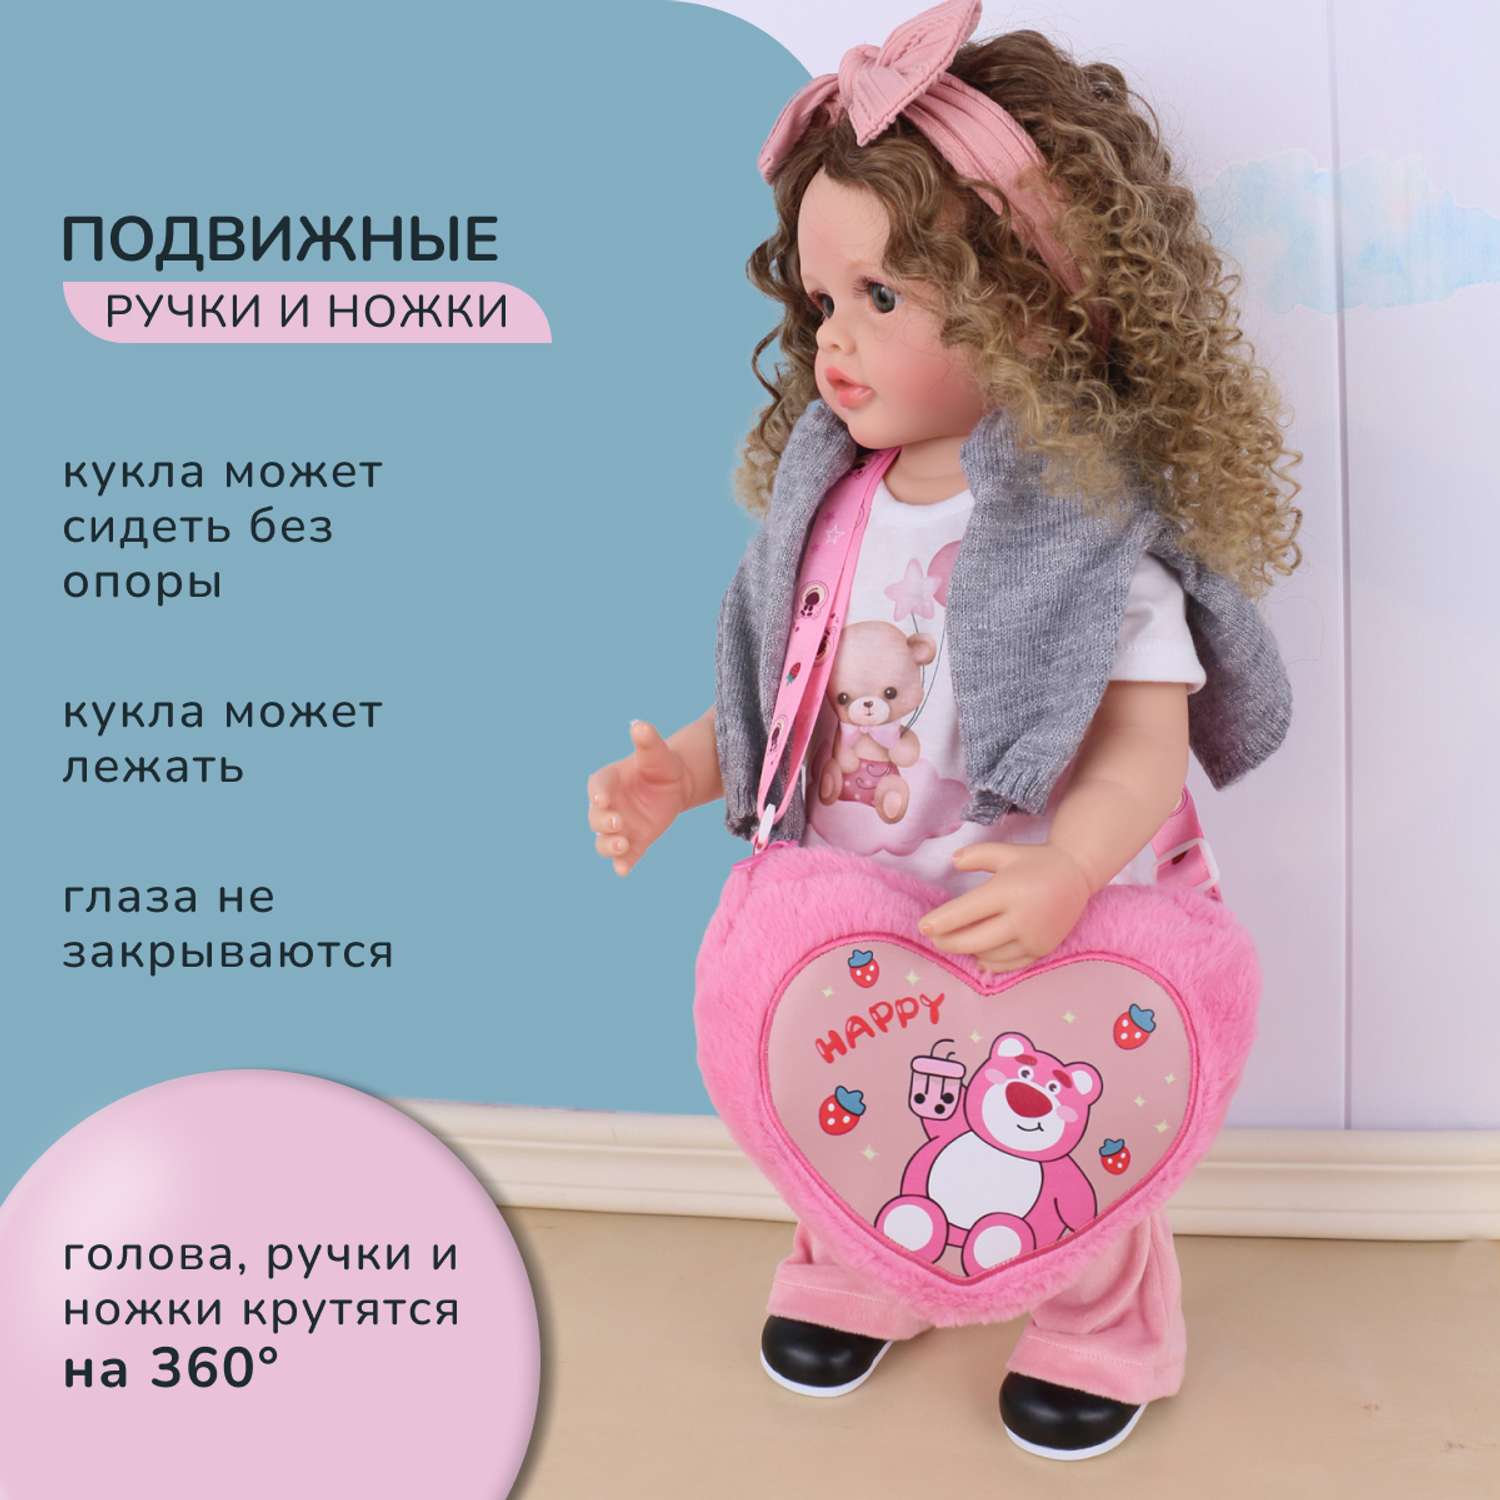 Кукла Реборн QA BABY Маргарита большая пупс набор игрушки для девочки 55 см 5552 - фото 5